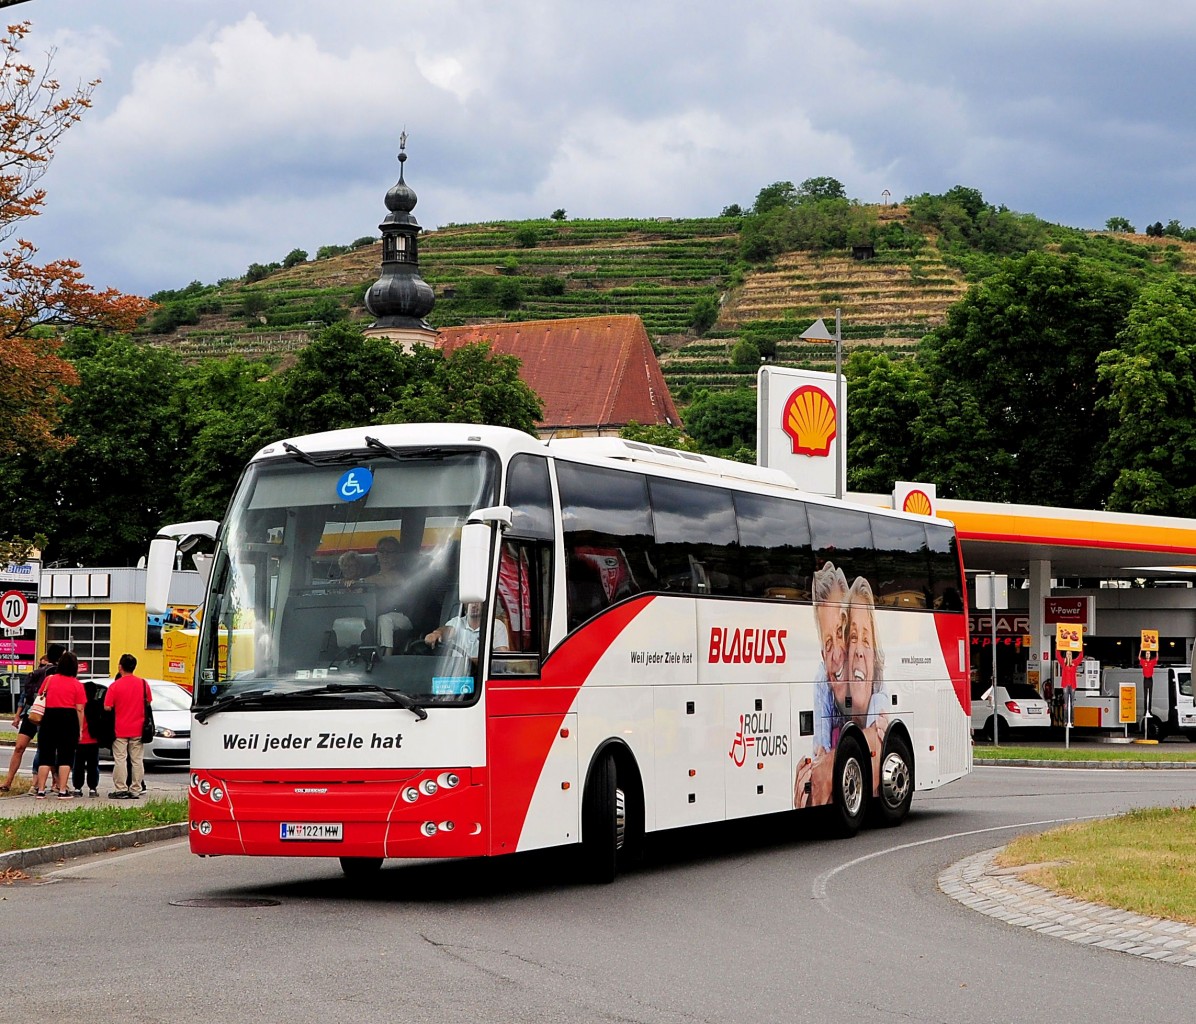 VDL Berkhof von Blaguss Reisen aus Wien (Rolli Tour=Lift fr Menschen mit Behinderung) in Krems gesehen.